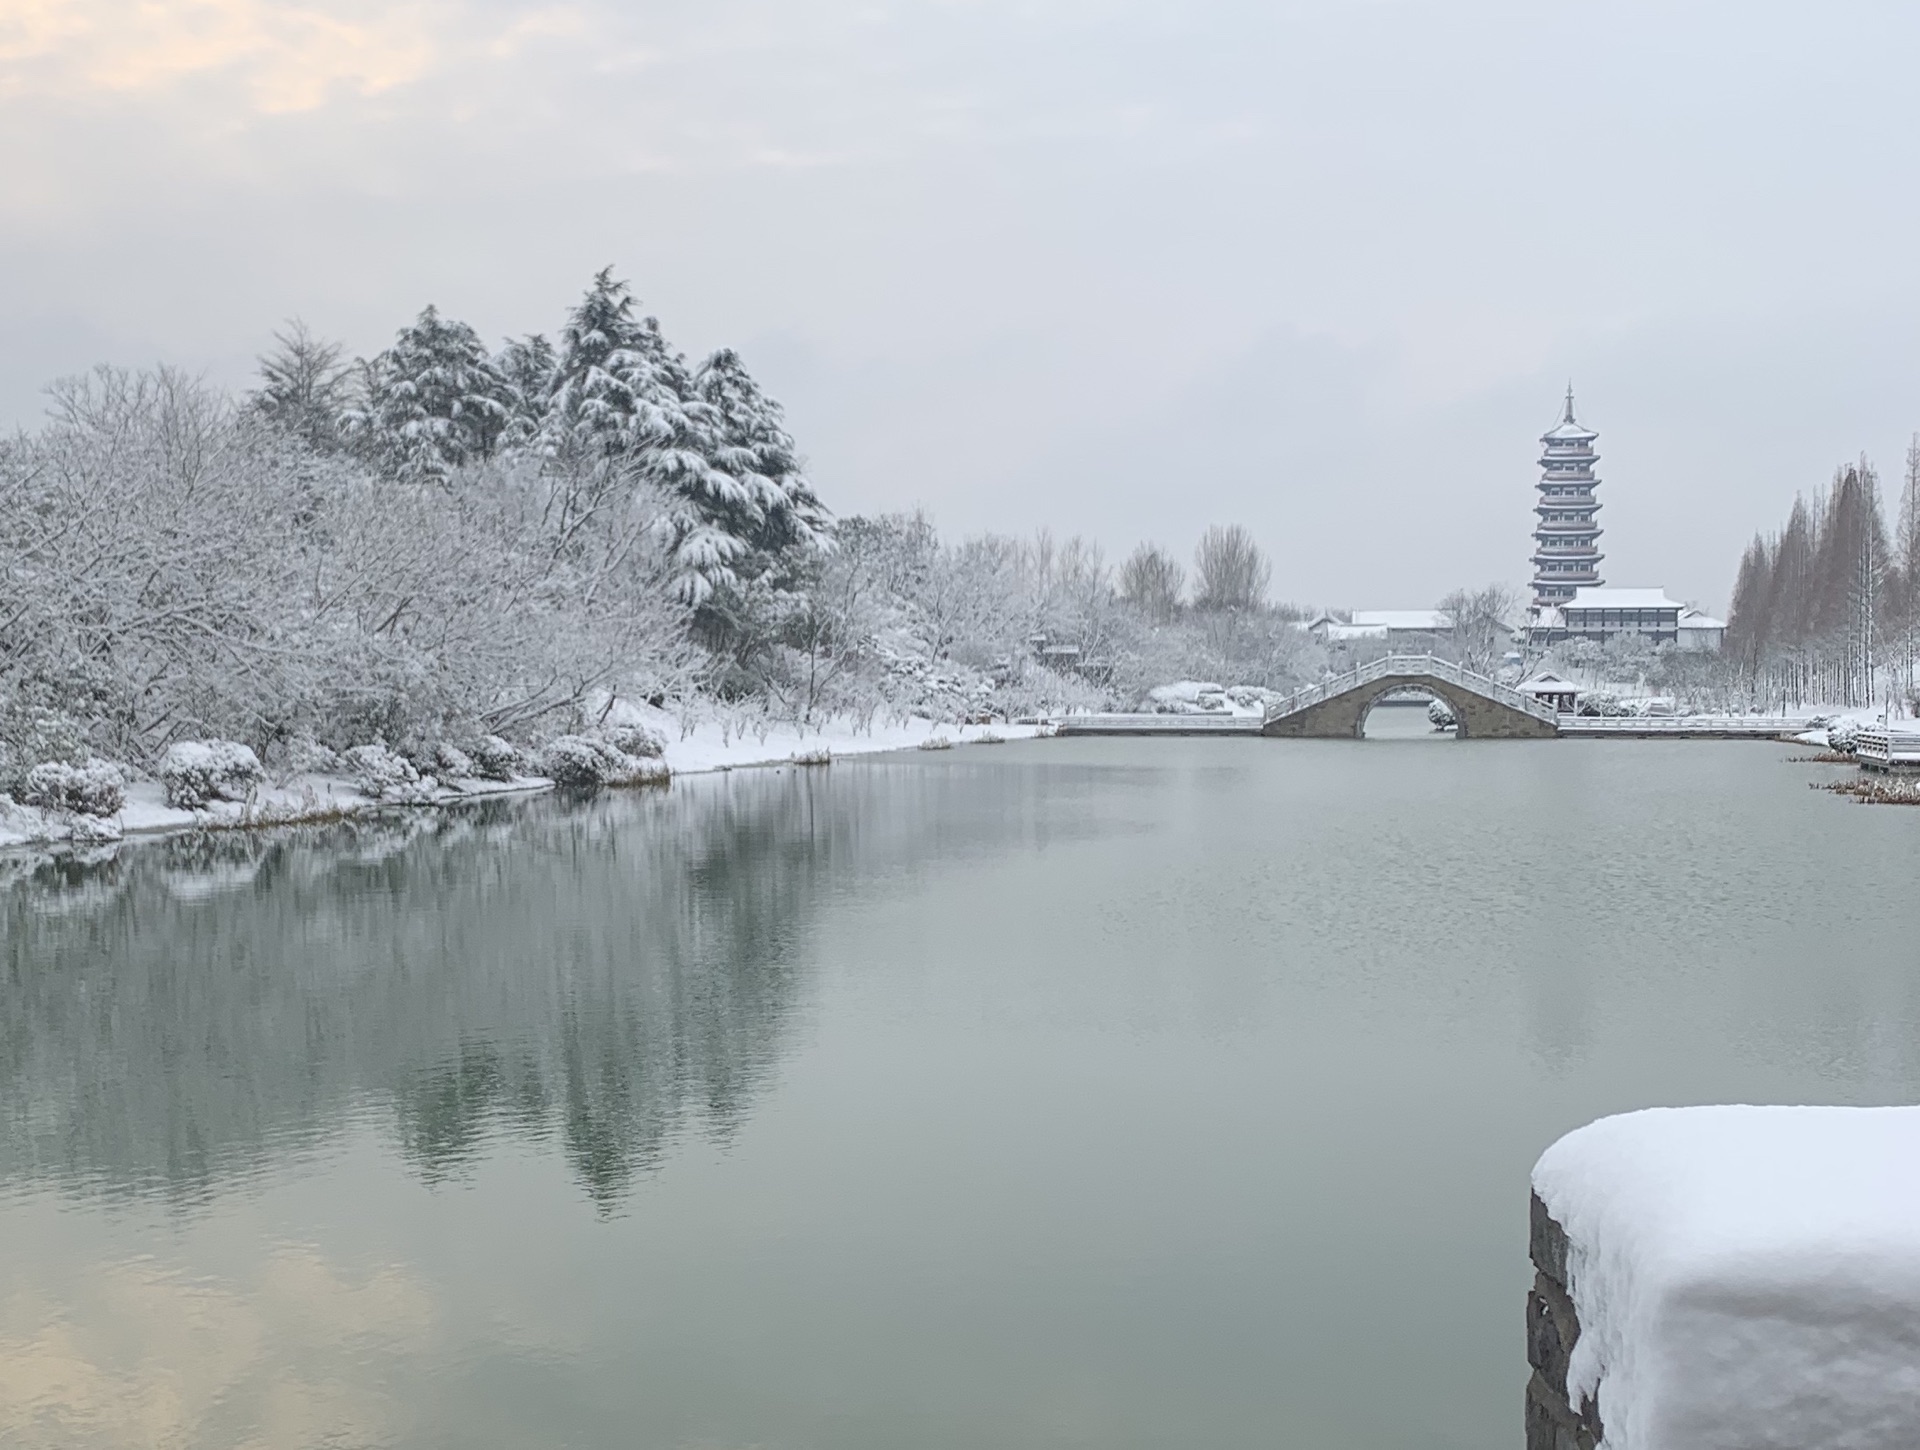 江苏扬州瘦西湖雪景桌面壁纸 - 图片壁纸